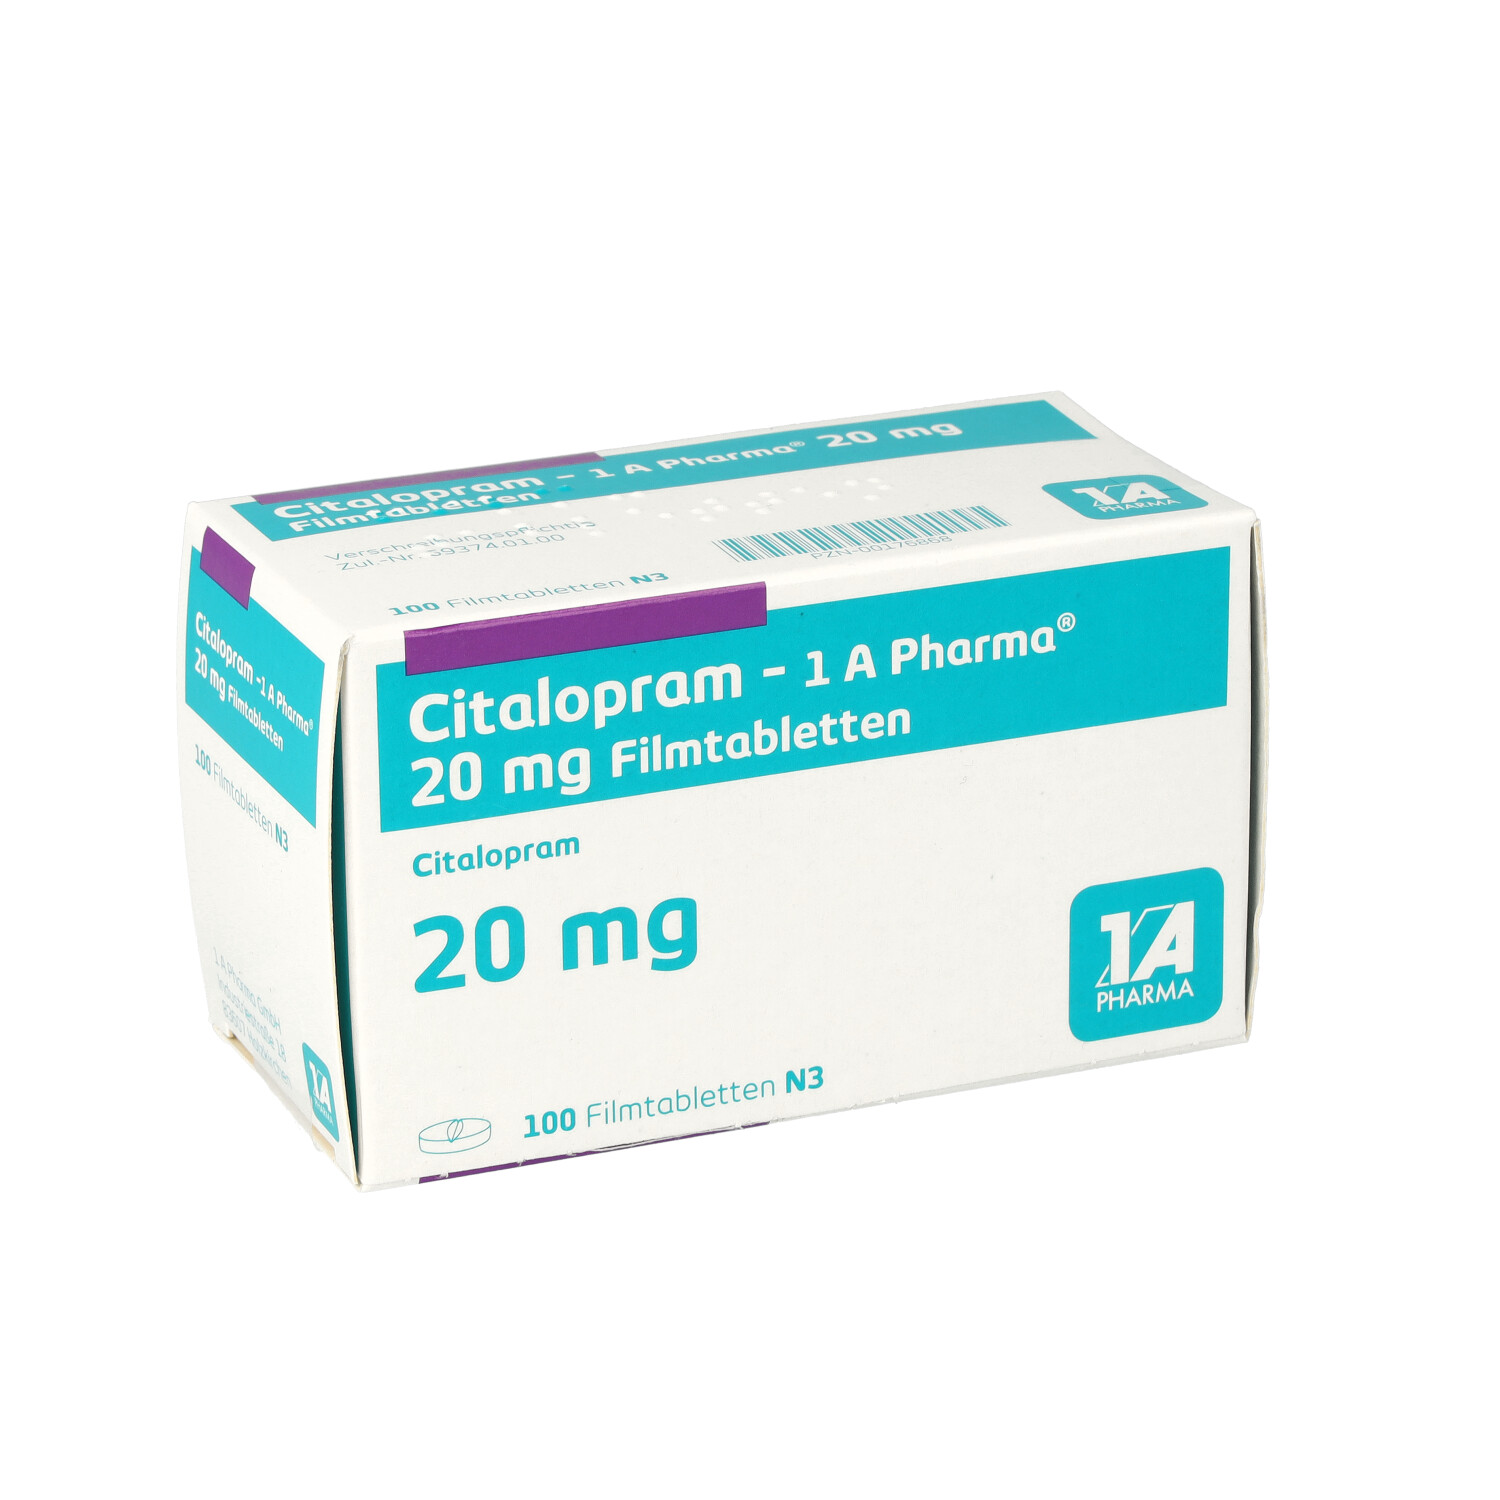 CITALOPRAM-1A Pharma 20 mg Filmtabletten